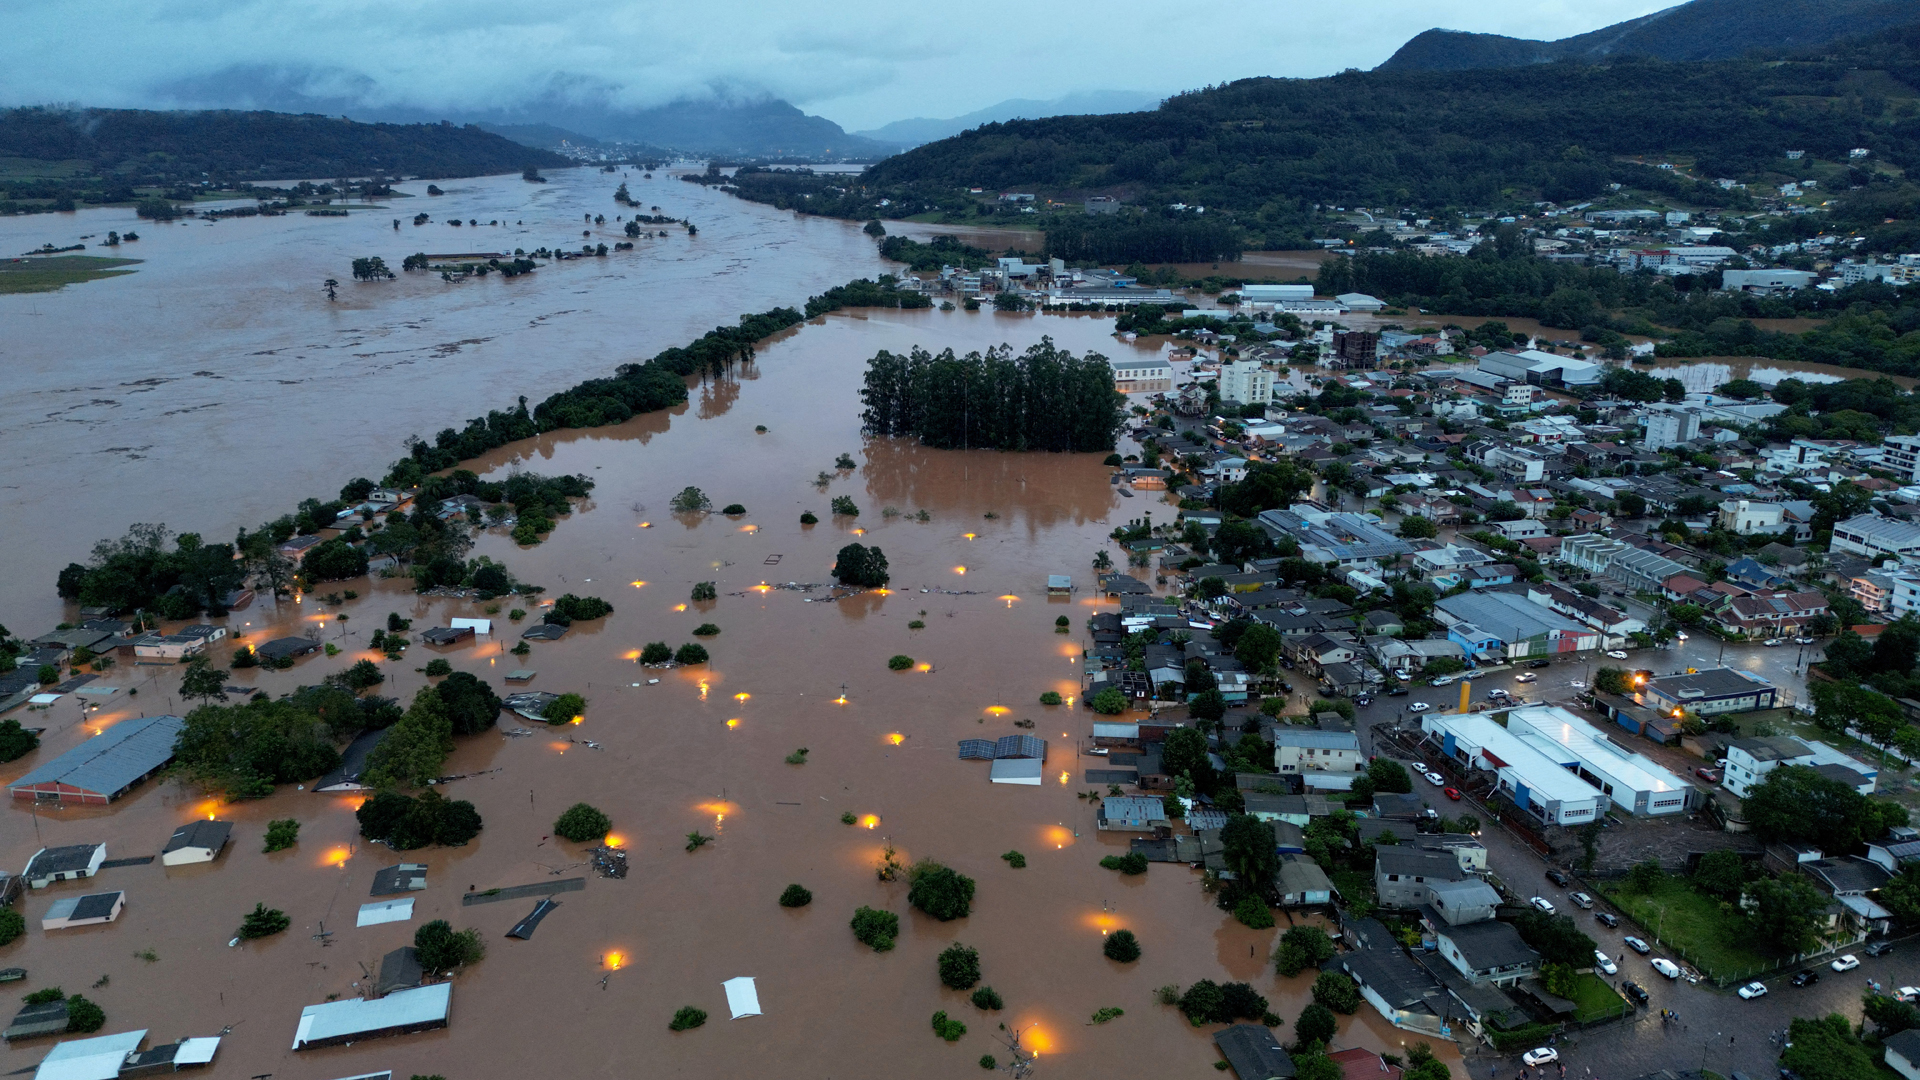 Enchentes afetam 40% das escolas e 200 mil estudantes no Rio Grande do Sul